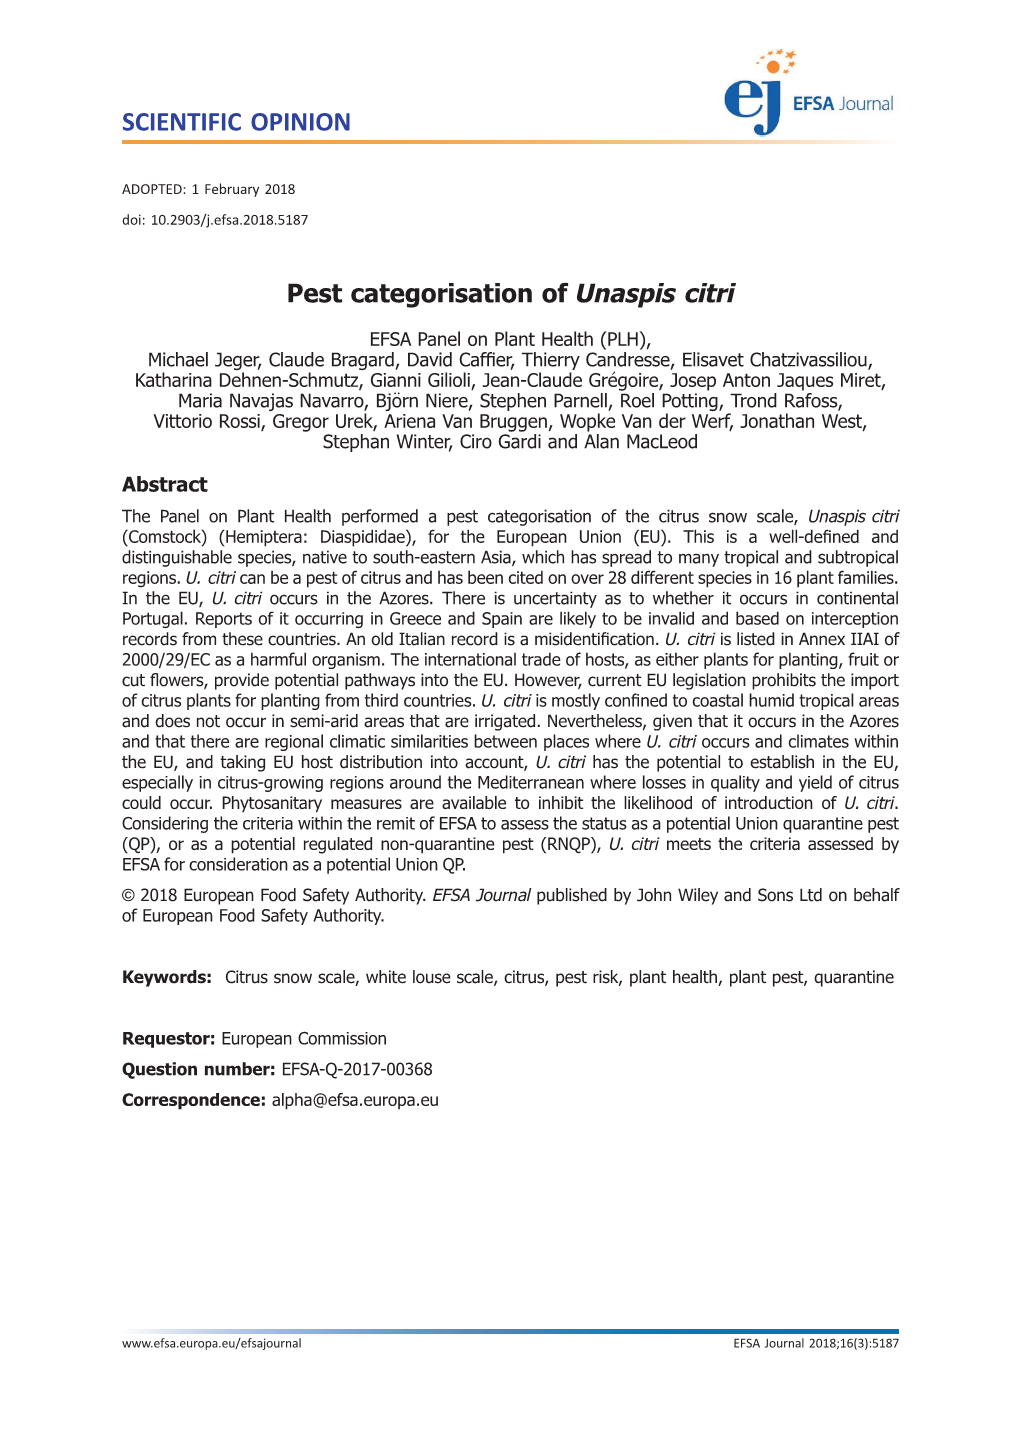 Pest Categorisation of Unaspis Citri